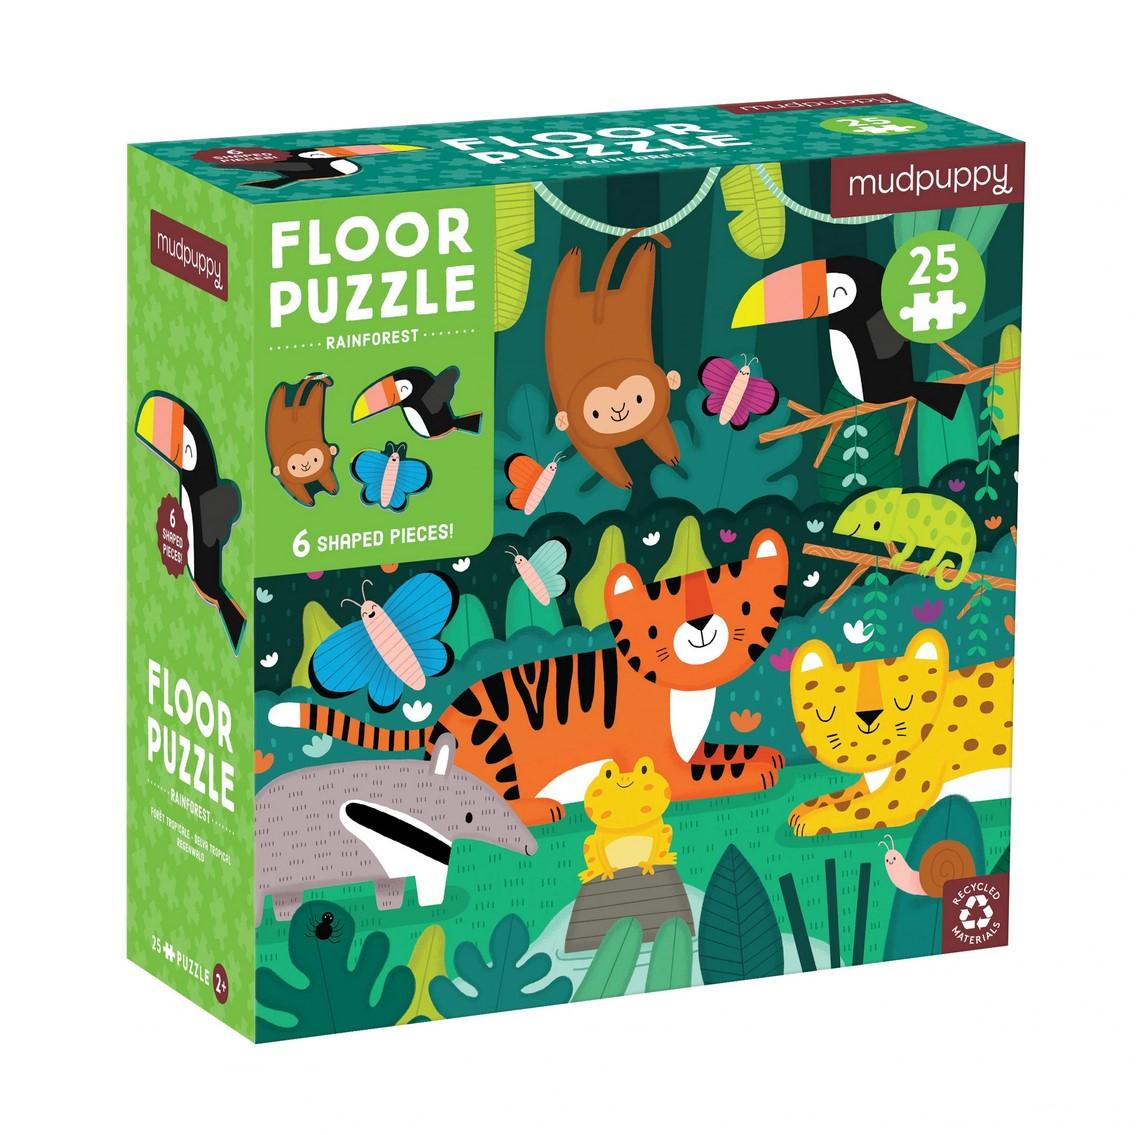 Rainforest 25pcs Floor Puzzle with Shaped Pieces - Taylorson